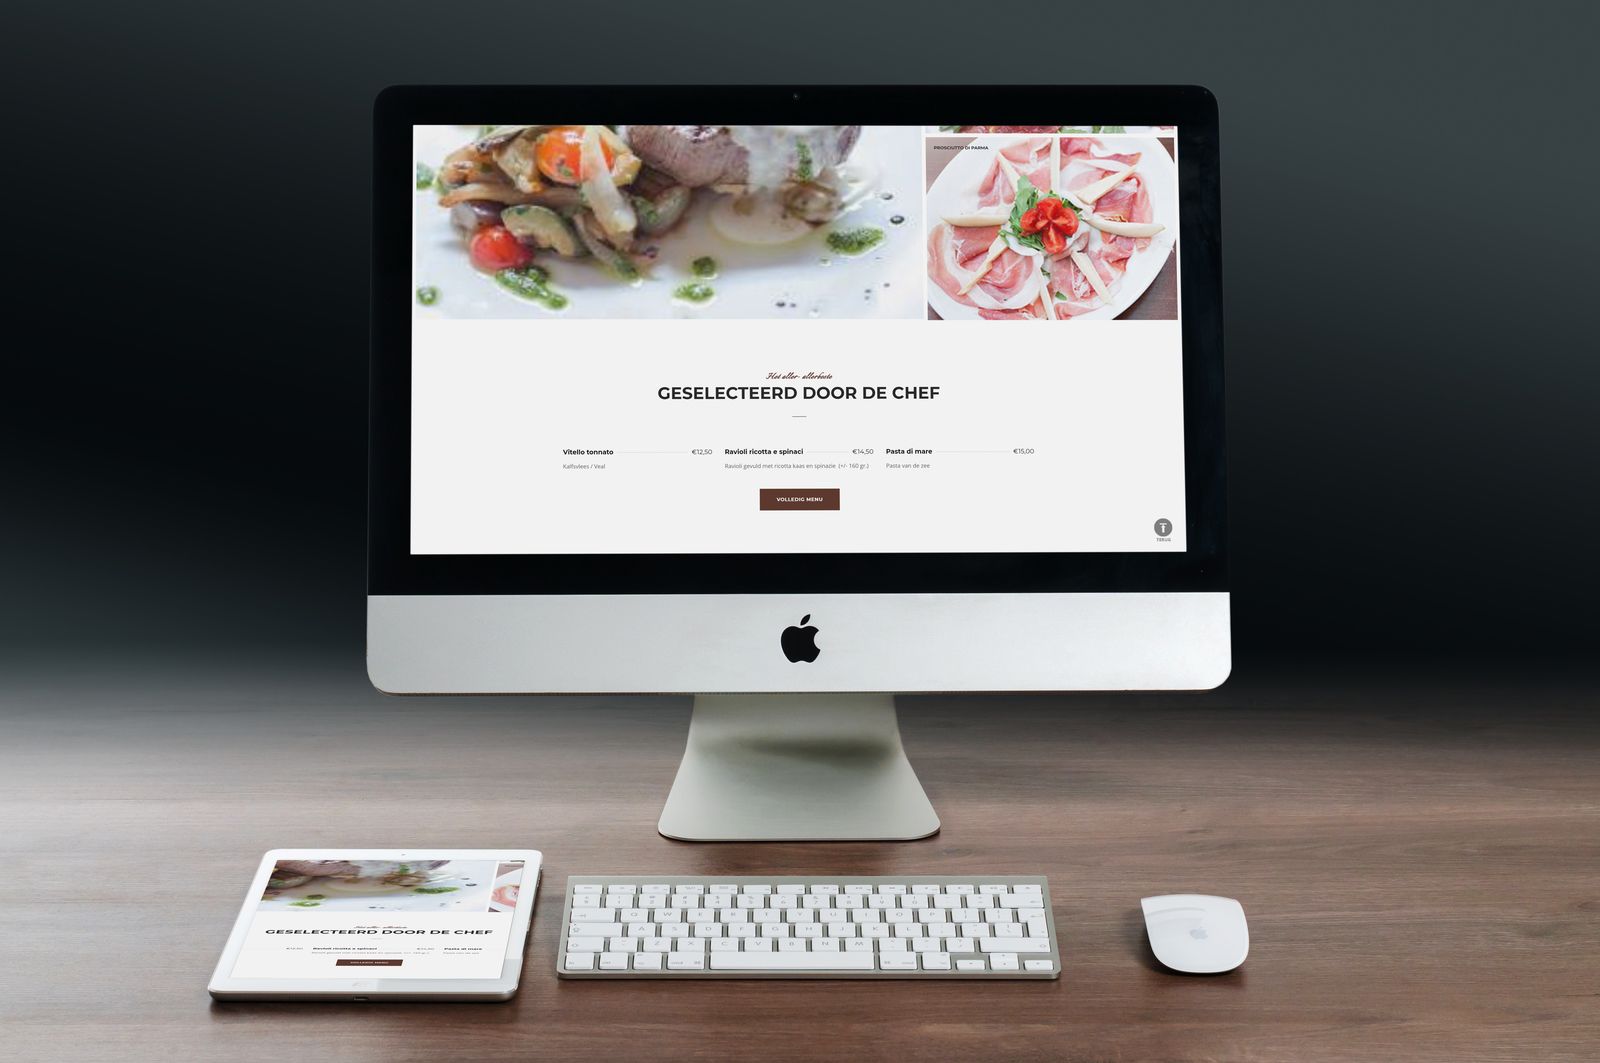 Betaalbare maatwerk website voor restaurant Palladio